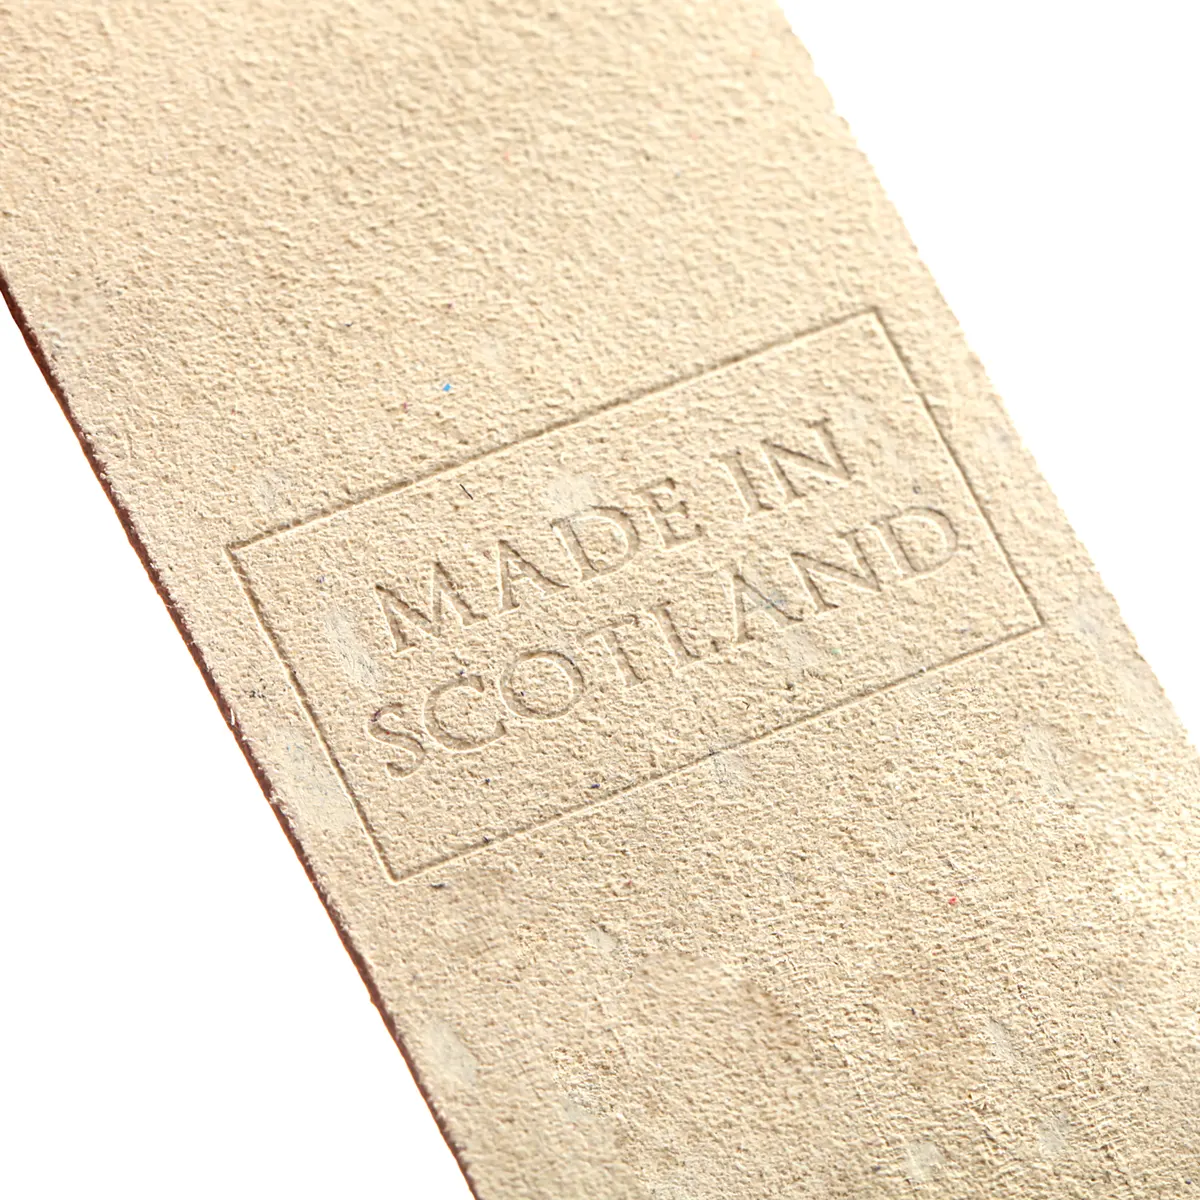 Oban - Lesezeichen aus Leder in Creme - Made in Scotland